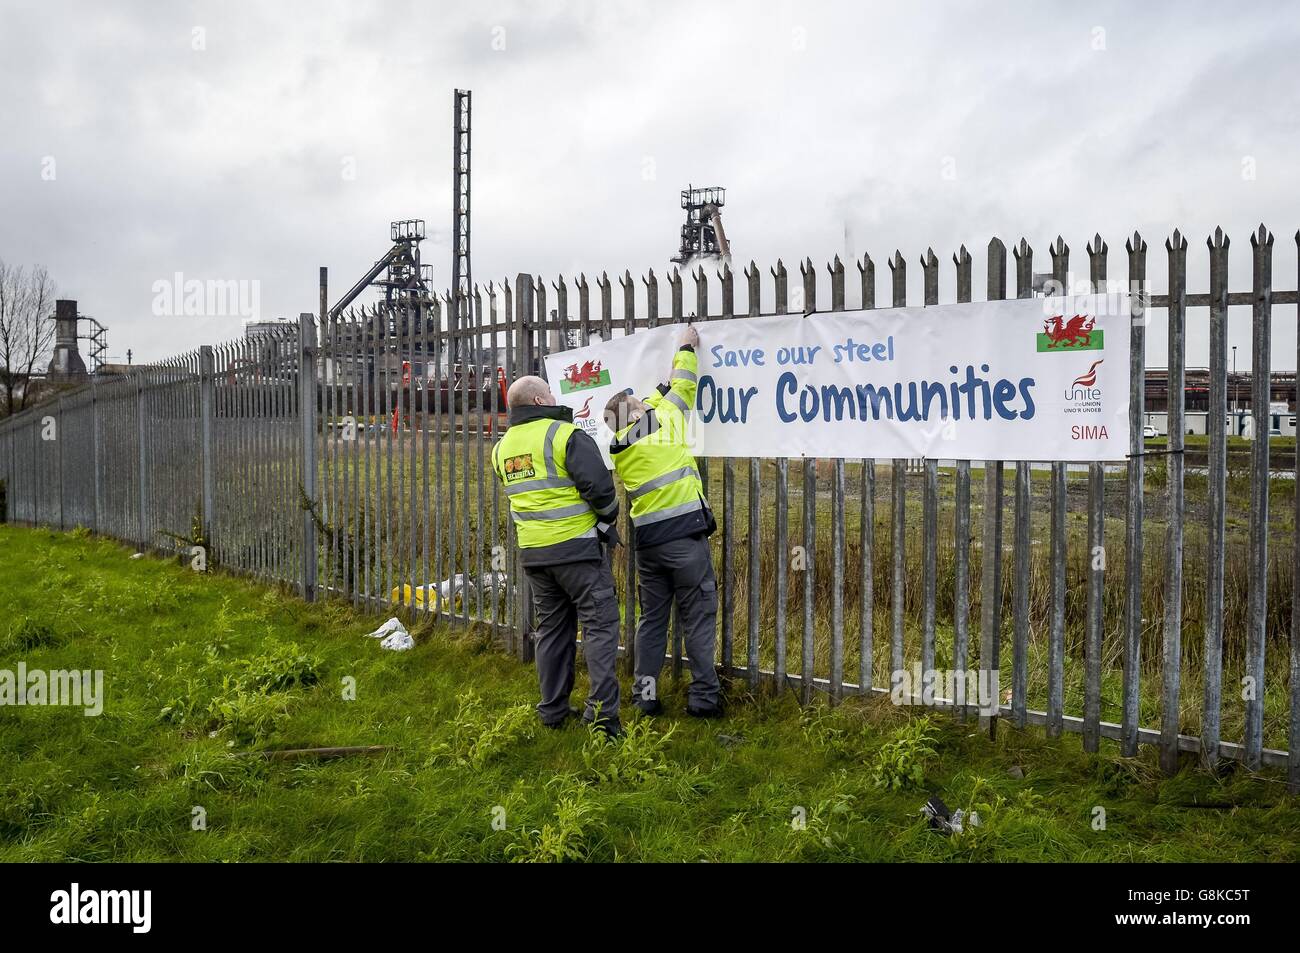 Sicherheitspersonal nimmt ein gewerkschaftliches Banner auf dem Zaun vor dem Stahlwerk Tata auf dem Hafenweg, Port Talbot, ab, da die Stahlindustrie einen weiteren großen Schlag erlitten hat, nachdem Tata bestätigt hat, dass mehr als 1,000 Arbeitsplätze abgebaut werden sollen. Stockfoto